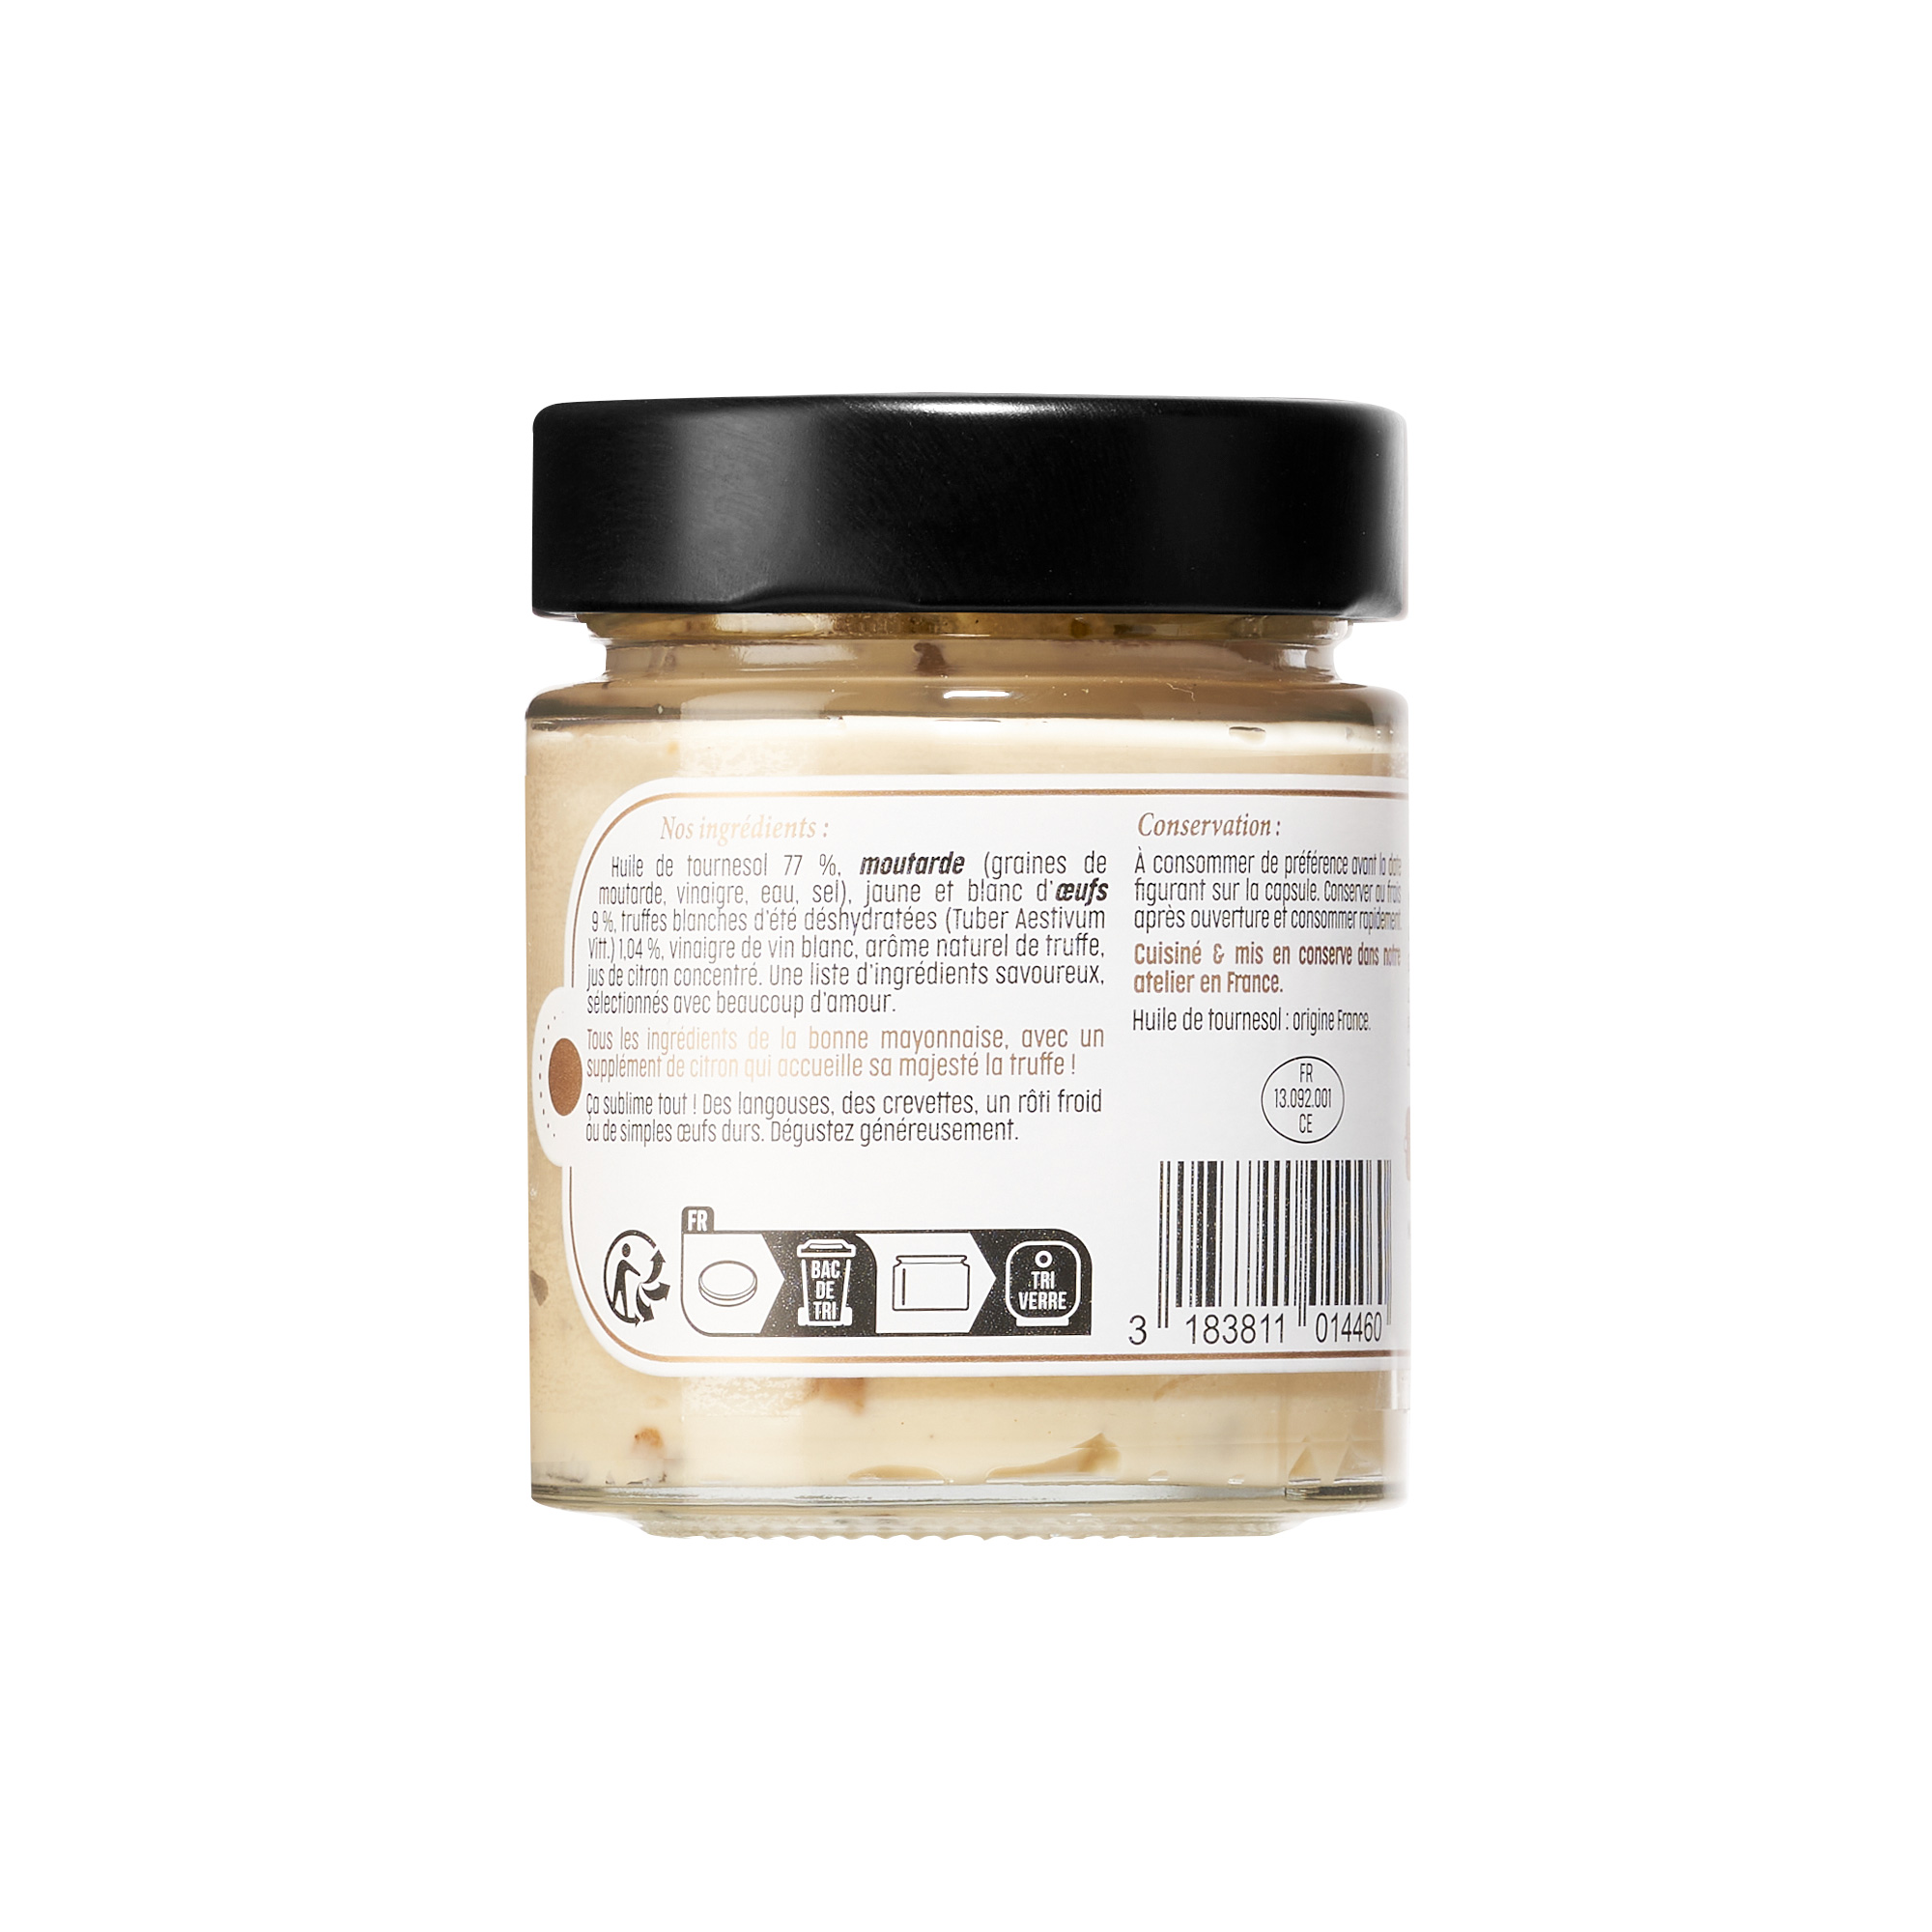 Le produit « Mayonnaise à la truffe» de Delhaize : cherchez la truffe